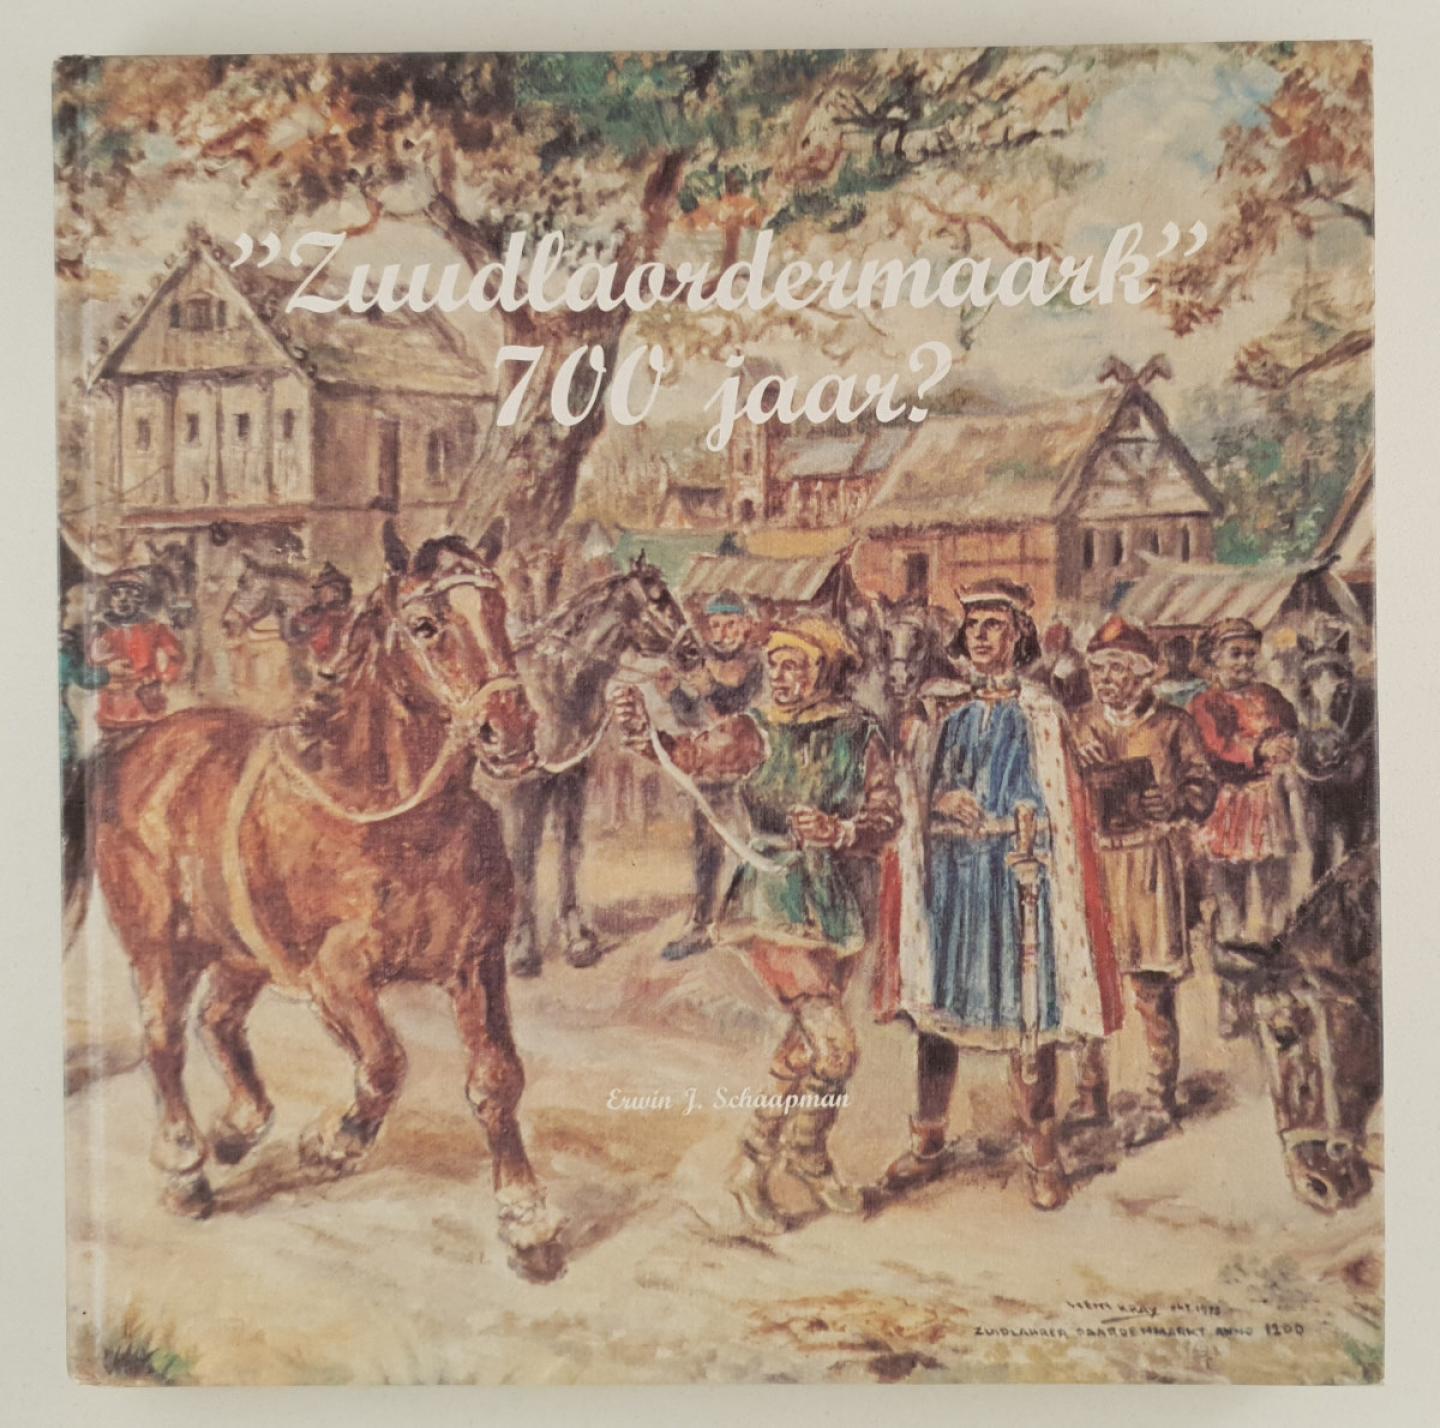 Schaapman, Erwin J. - "Zuudlaordermaark", 700 jaar?